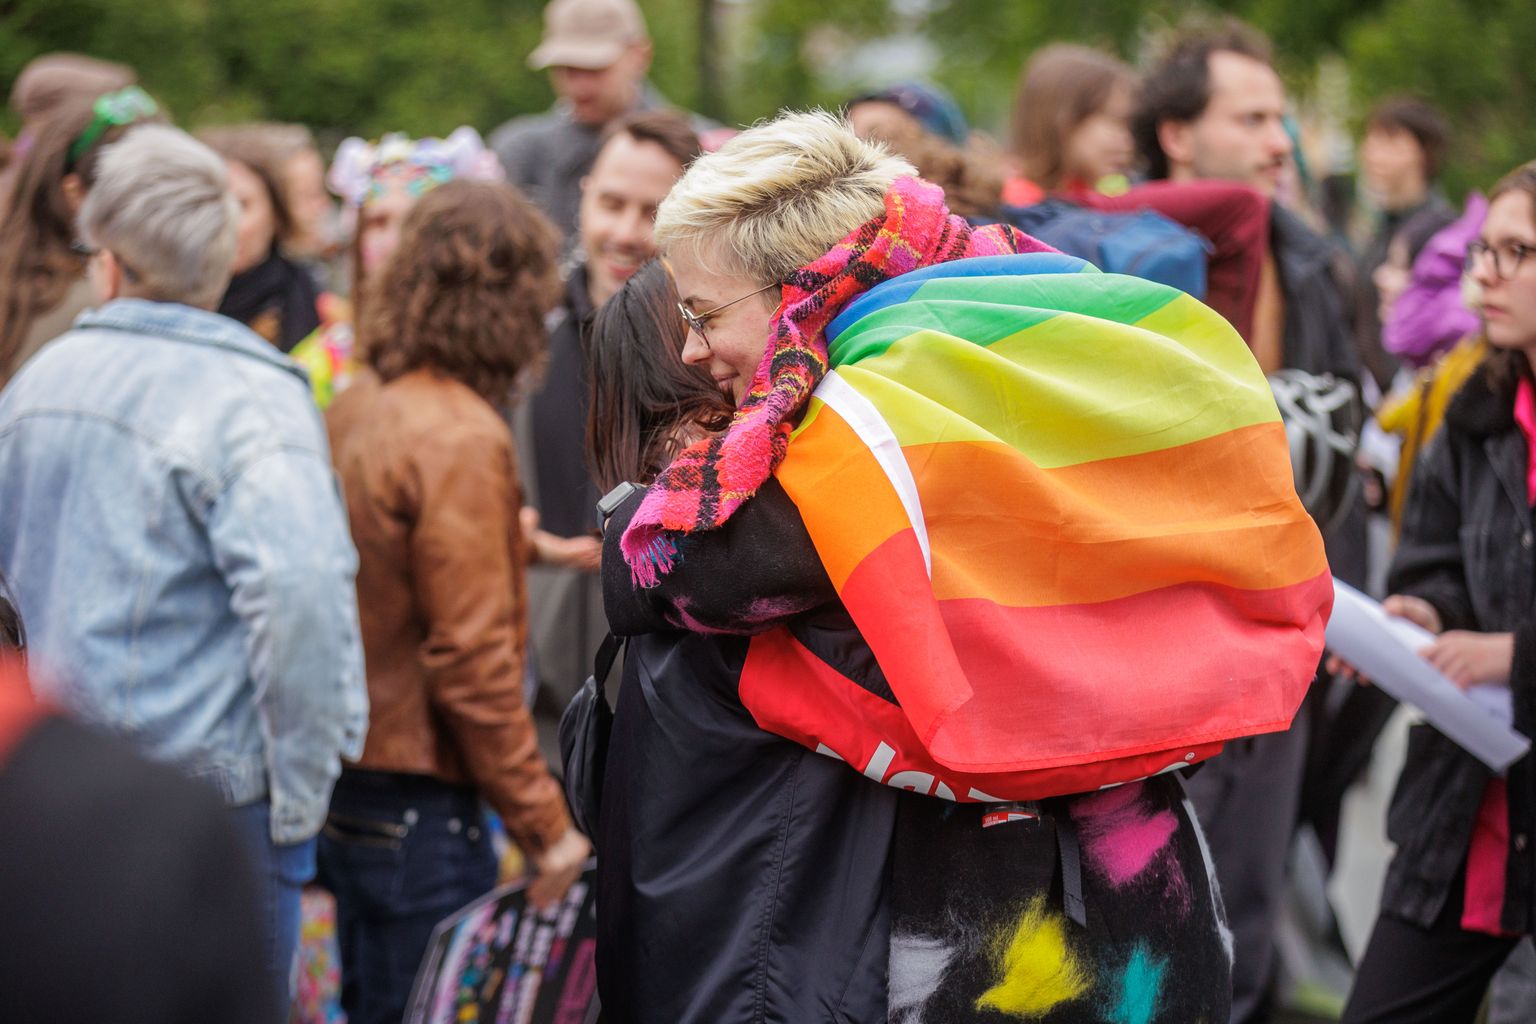 17.05.23, Tallinn LGBT-vaenu vastasel päeval toimus Tammsaare pargis meeleavaldus. Q-Space’i kultuuriprojekti sõnul oli meeleavalduse eesmärk tuua tähelepanu LGBT+ inimeste vastasele vägivallale ning näidata üles üksmeelt LGBT+ ukrainlastega. Foto Taavi Sepp, Postimees